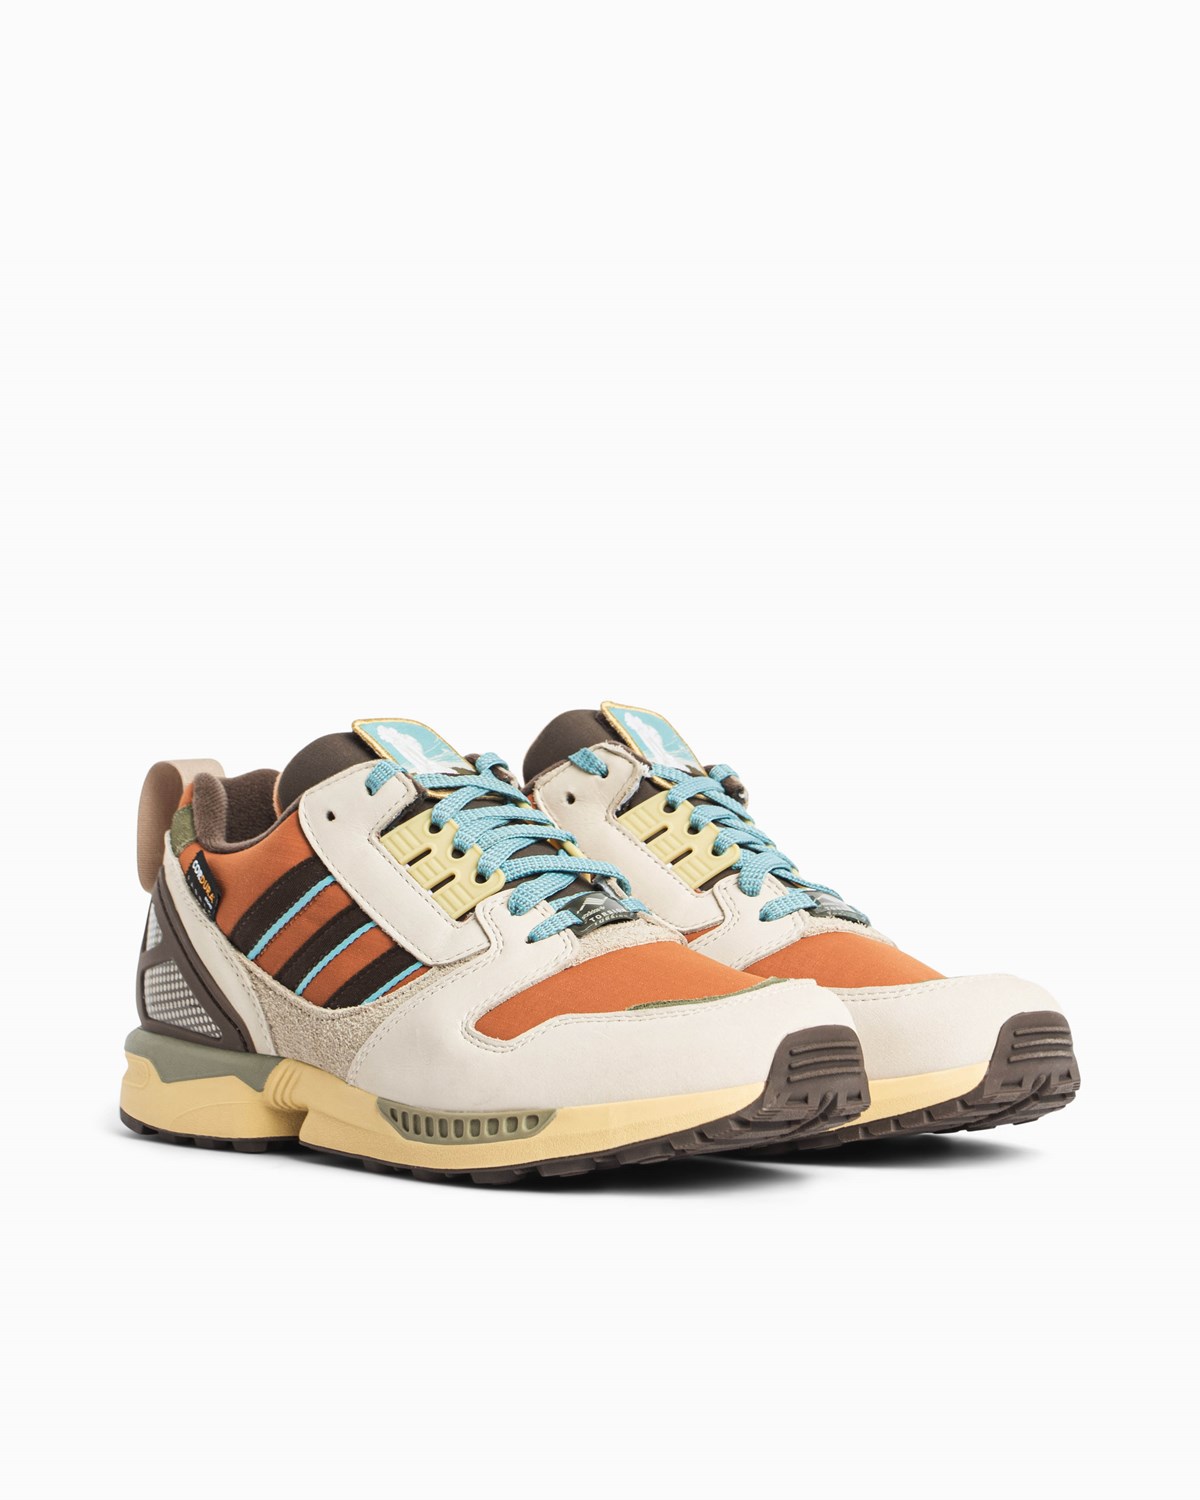 ZX 8000 - National Park adidas Footwear Sneakers Brown